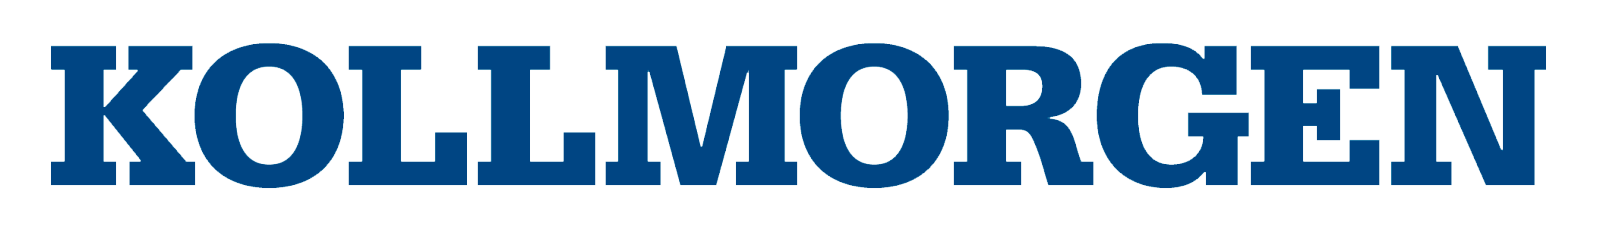 Kollmorgen_Logo